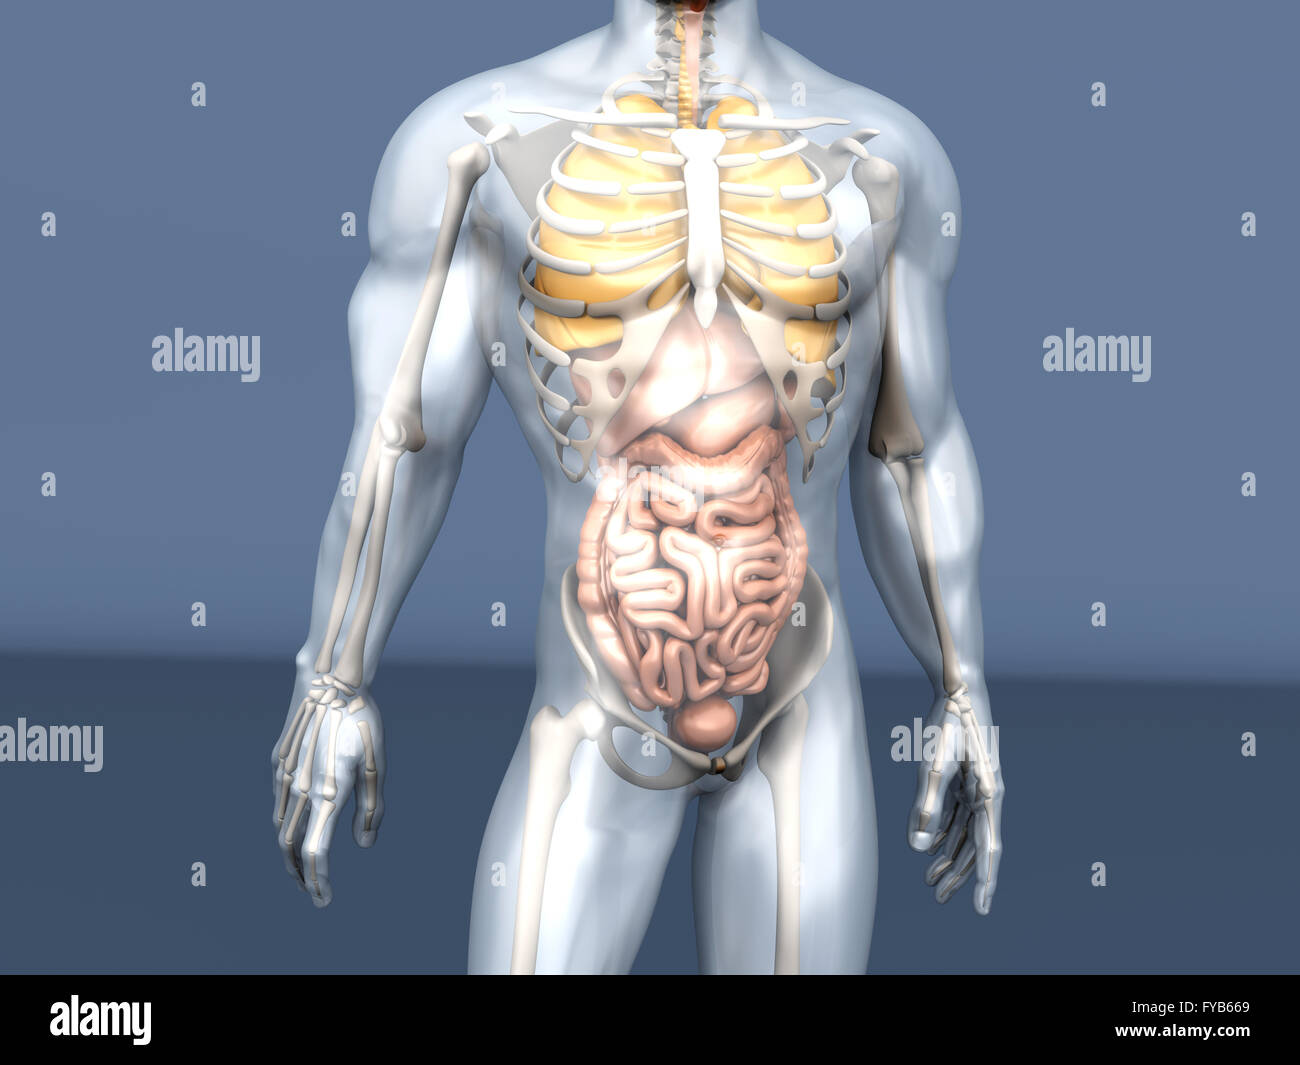 Строение мужчины внутренние органы фото. Анатомия человека. Скелет с внутренними органами. Организм человека. Анатомия органов у мужчины с скелетом.